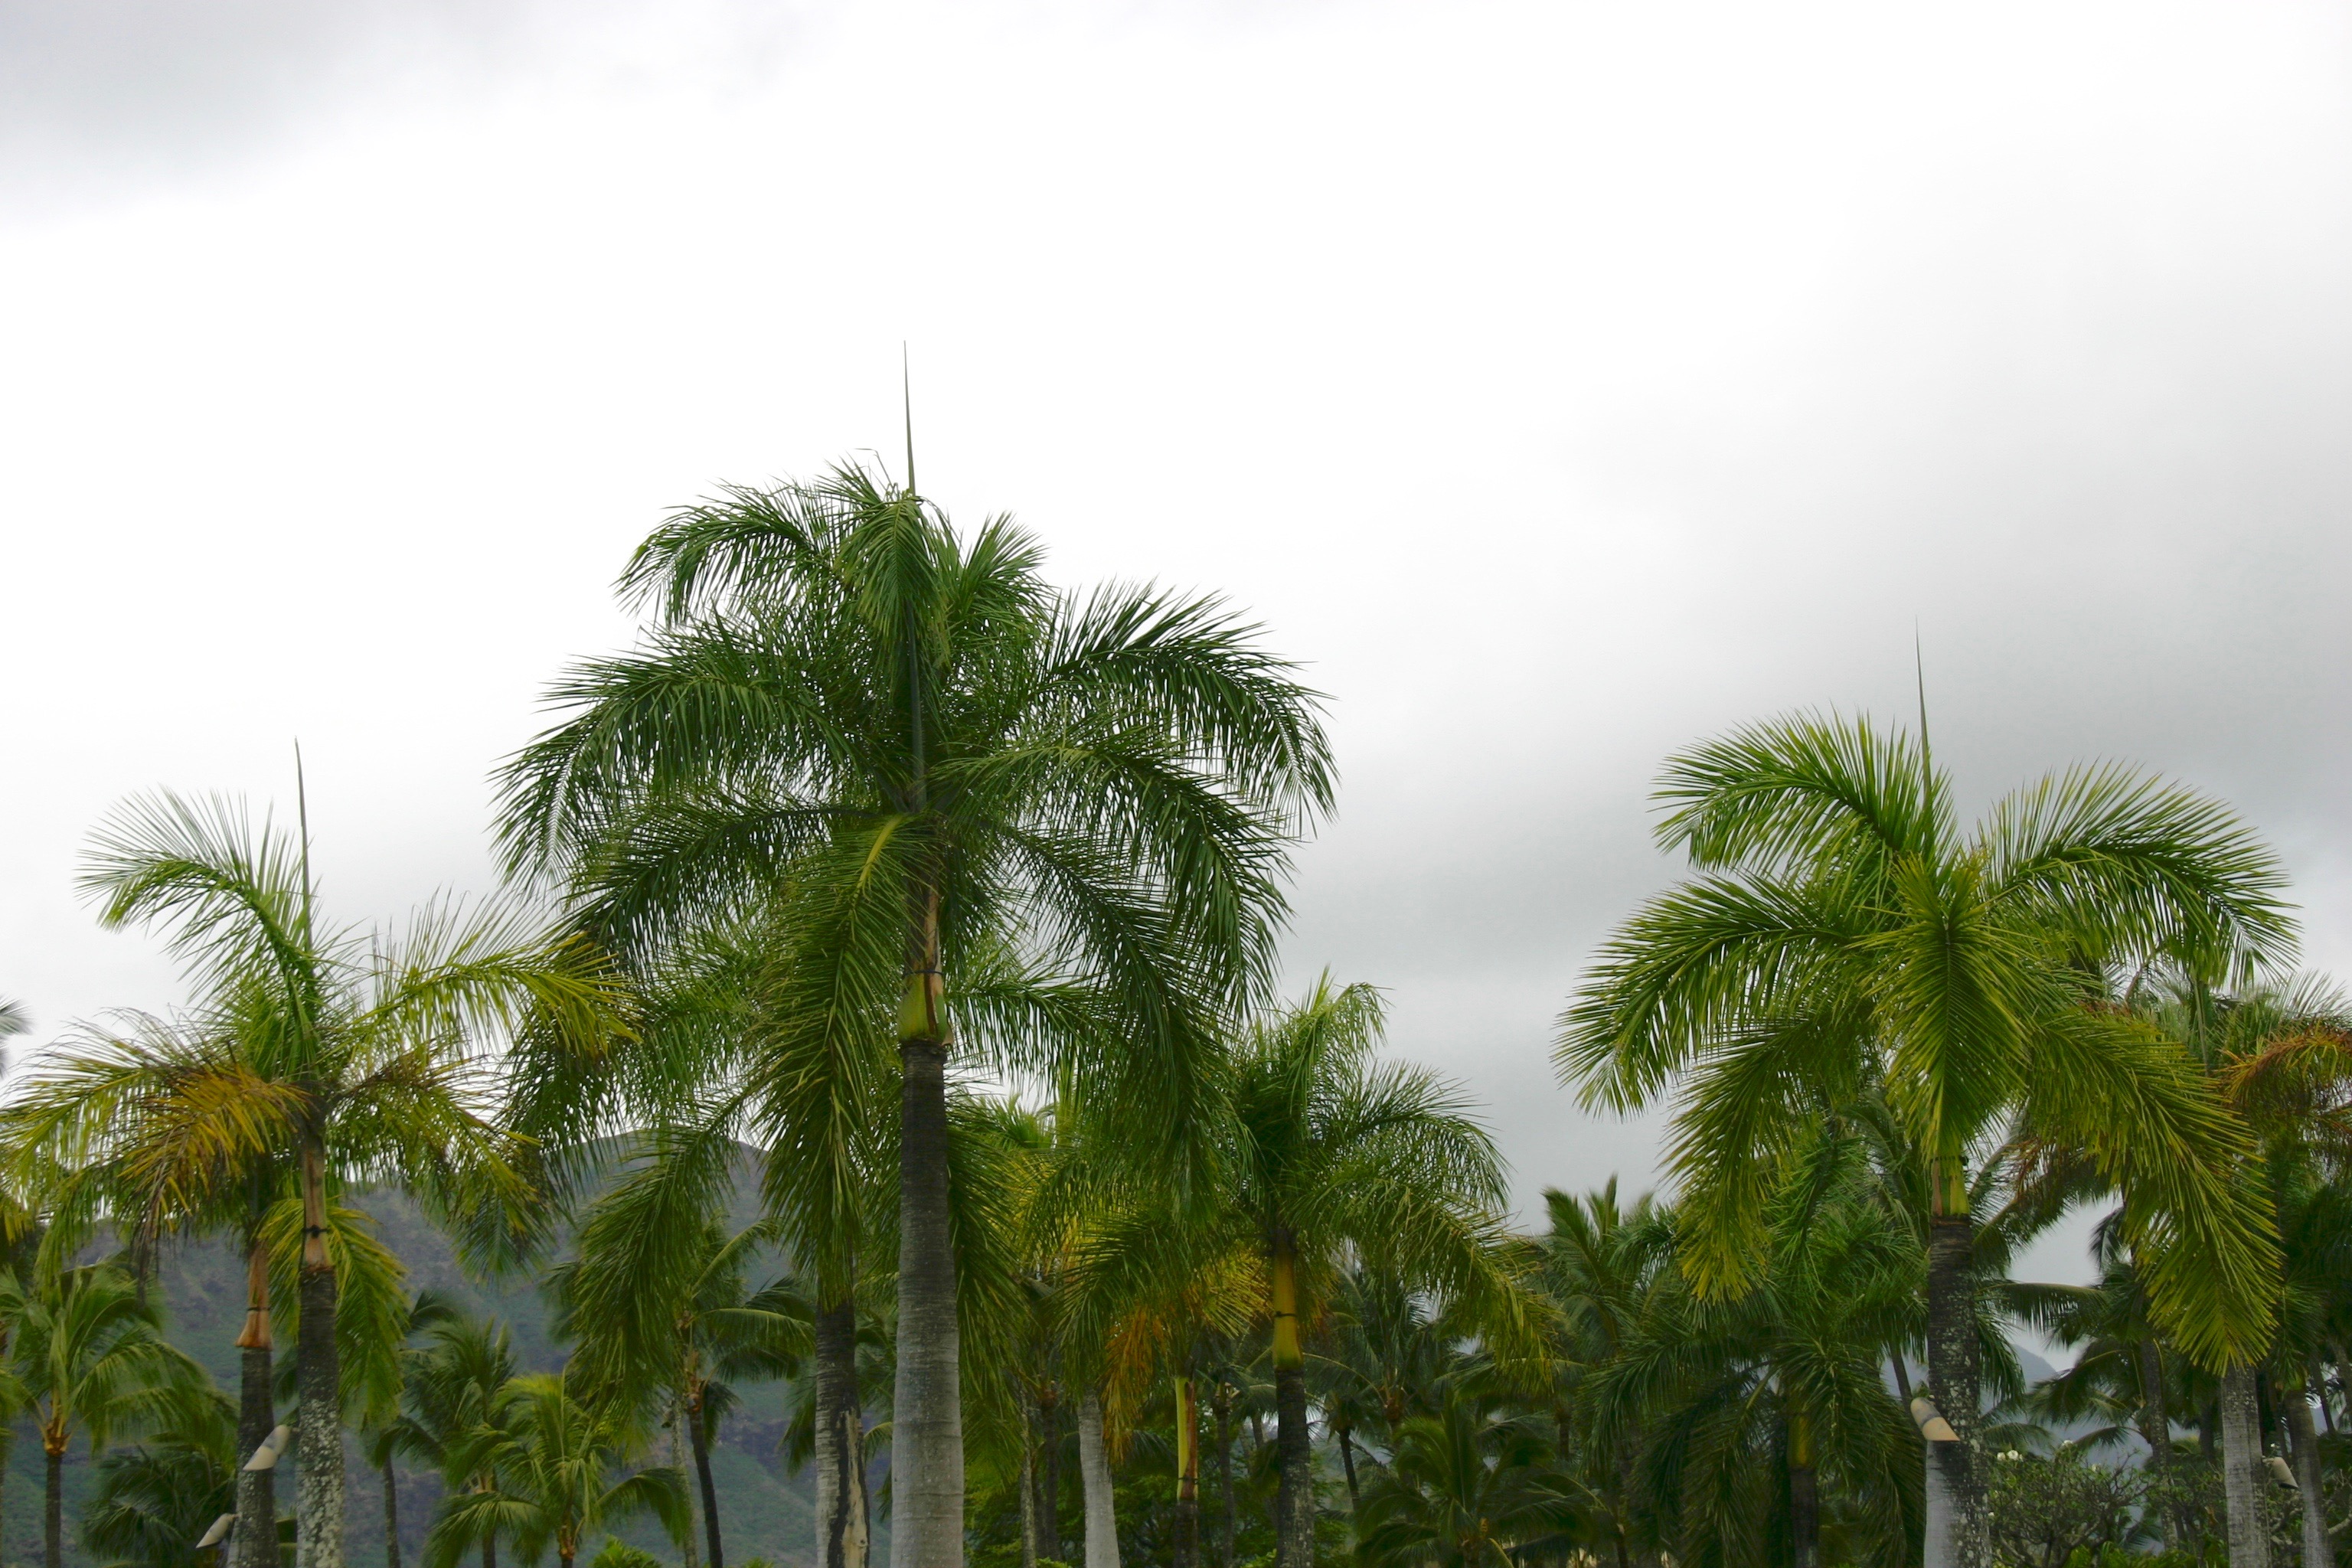 Palm trees against a gloomy overcast cloudy sky.